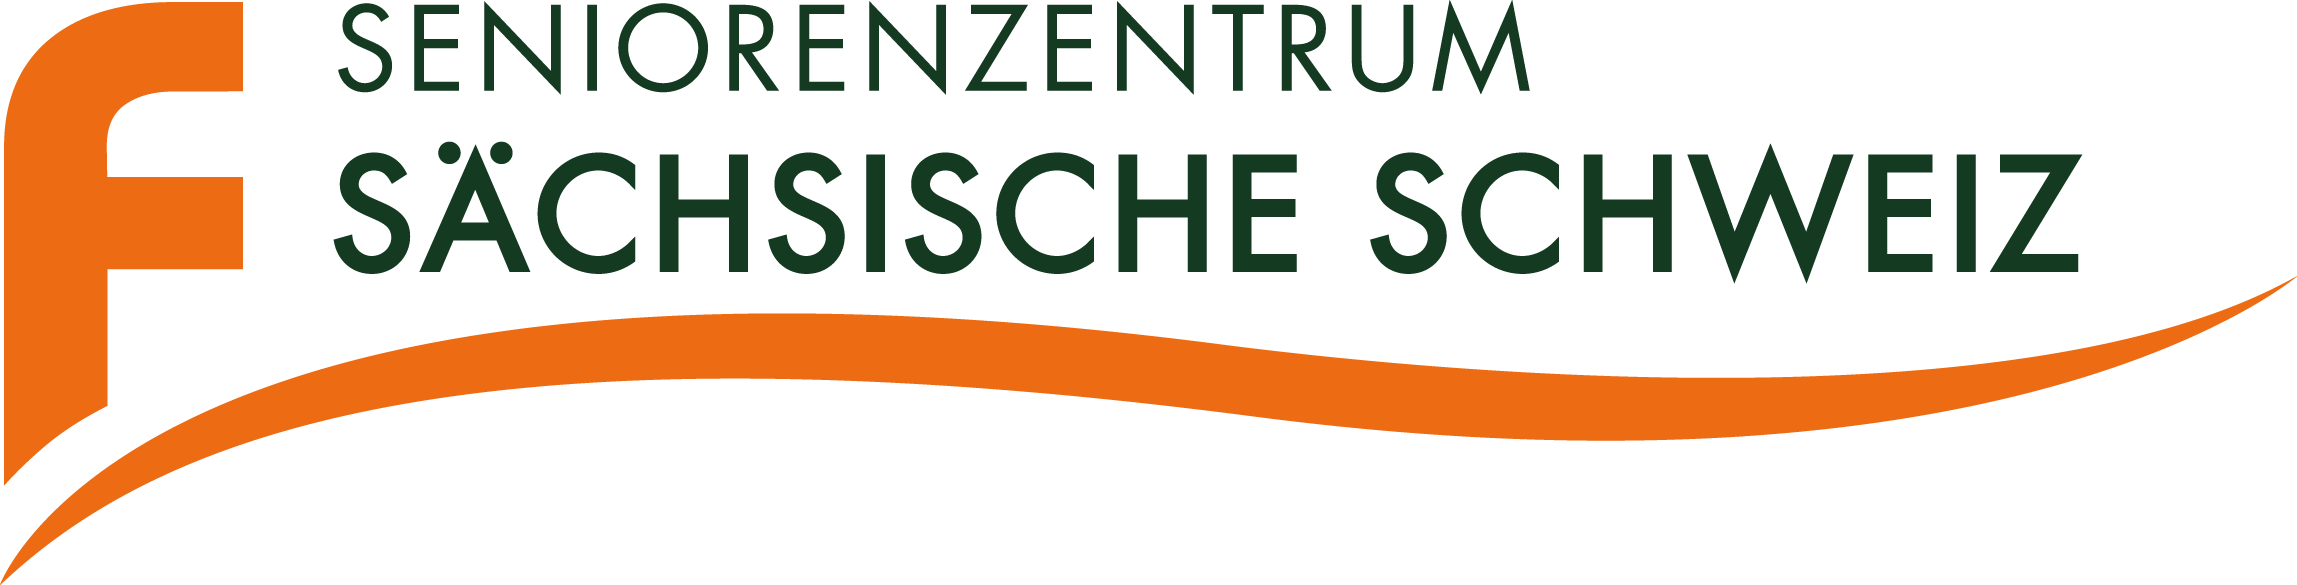 Seniorenzentrum Sächsische Schweiz